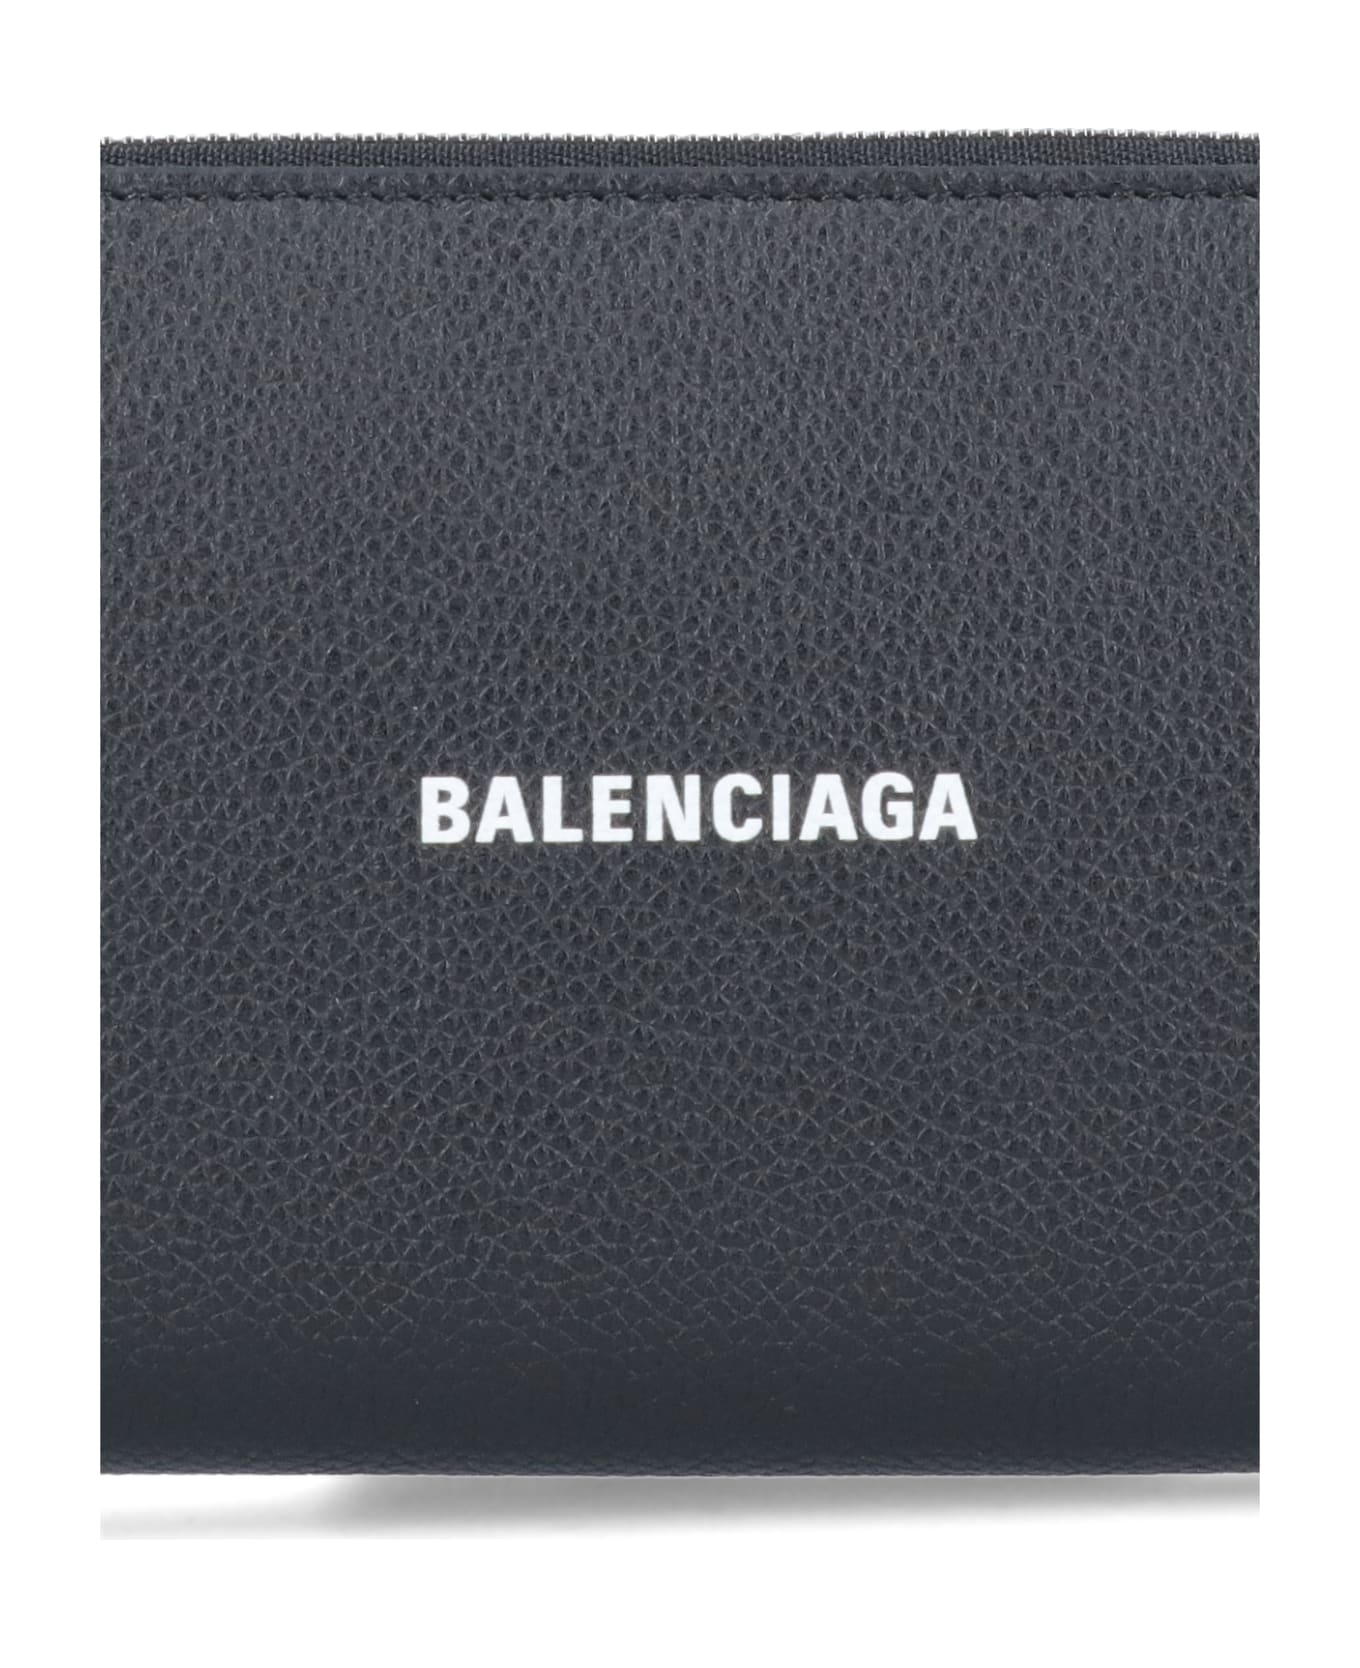 Balenciaga Wallet - Black/white